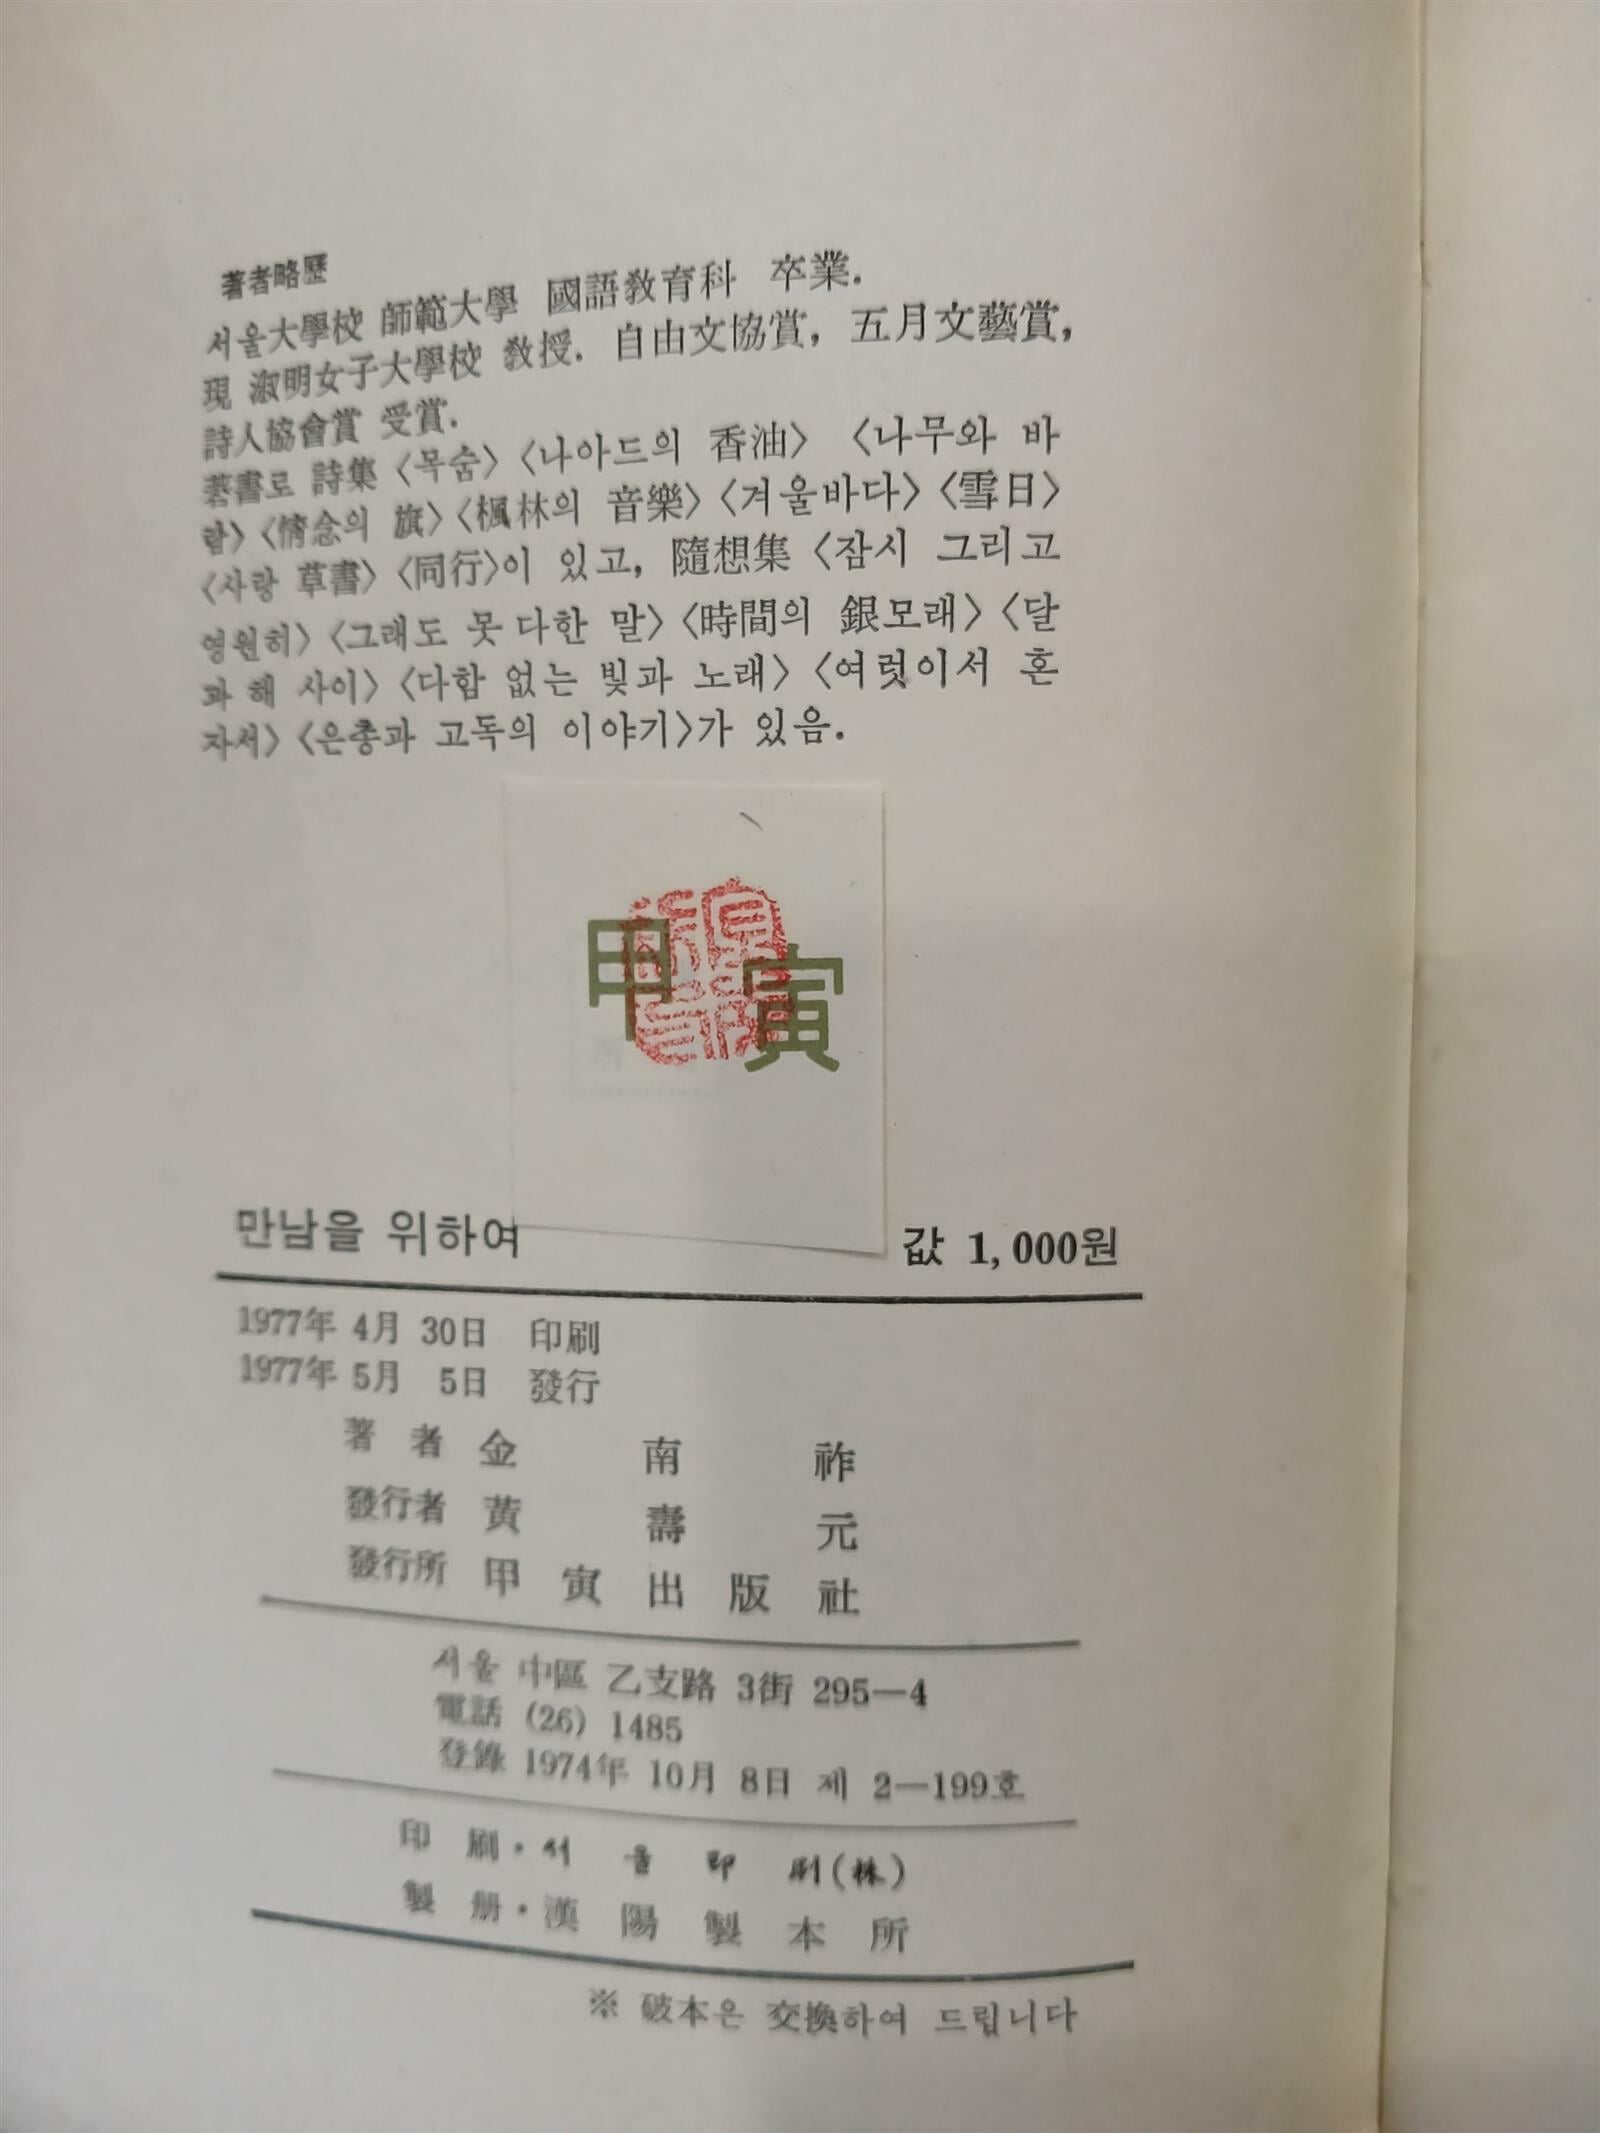 만남을 위하여 - 김남조 에세이 自選集 | 1977년 5월 초판